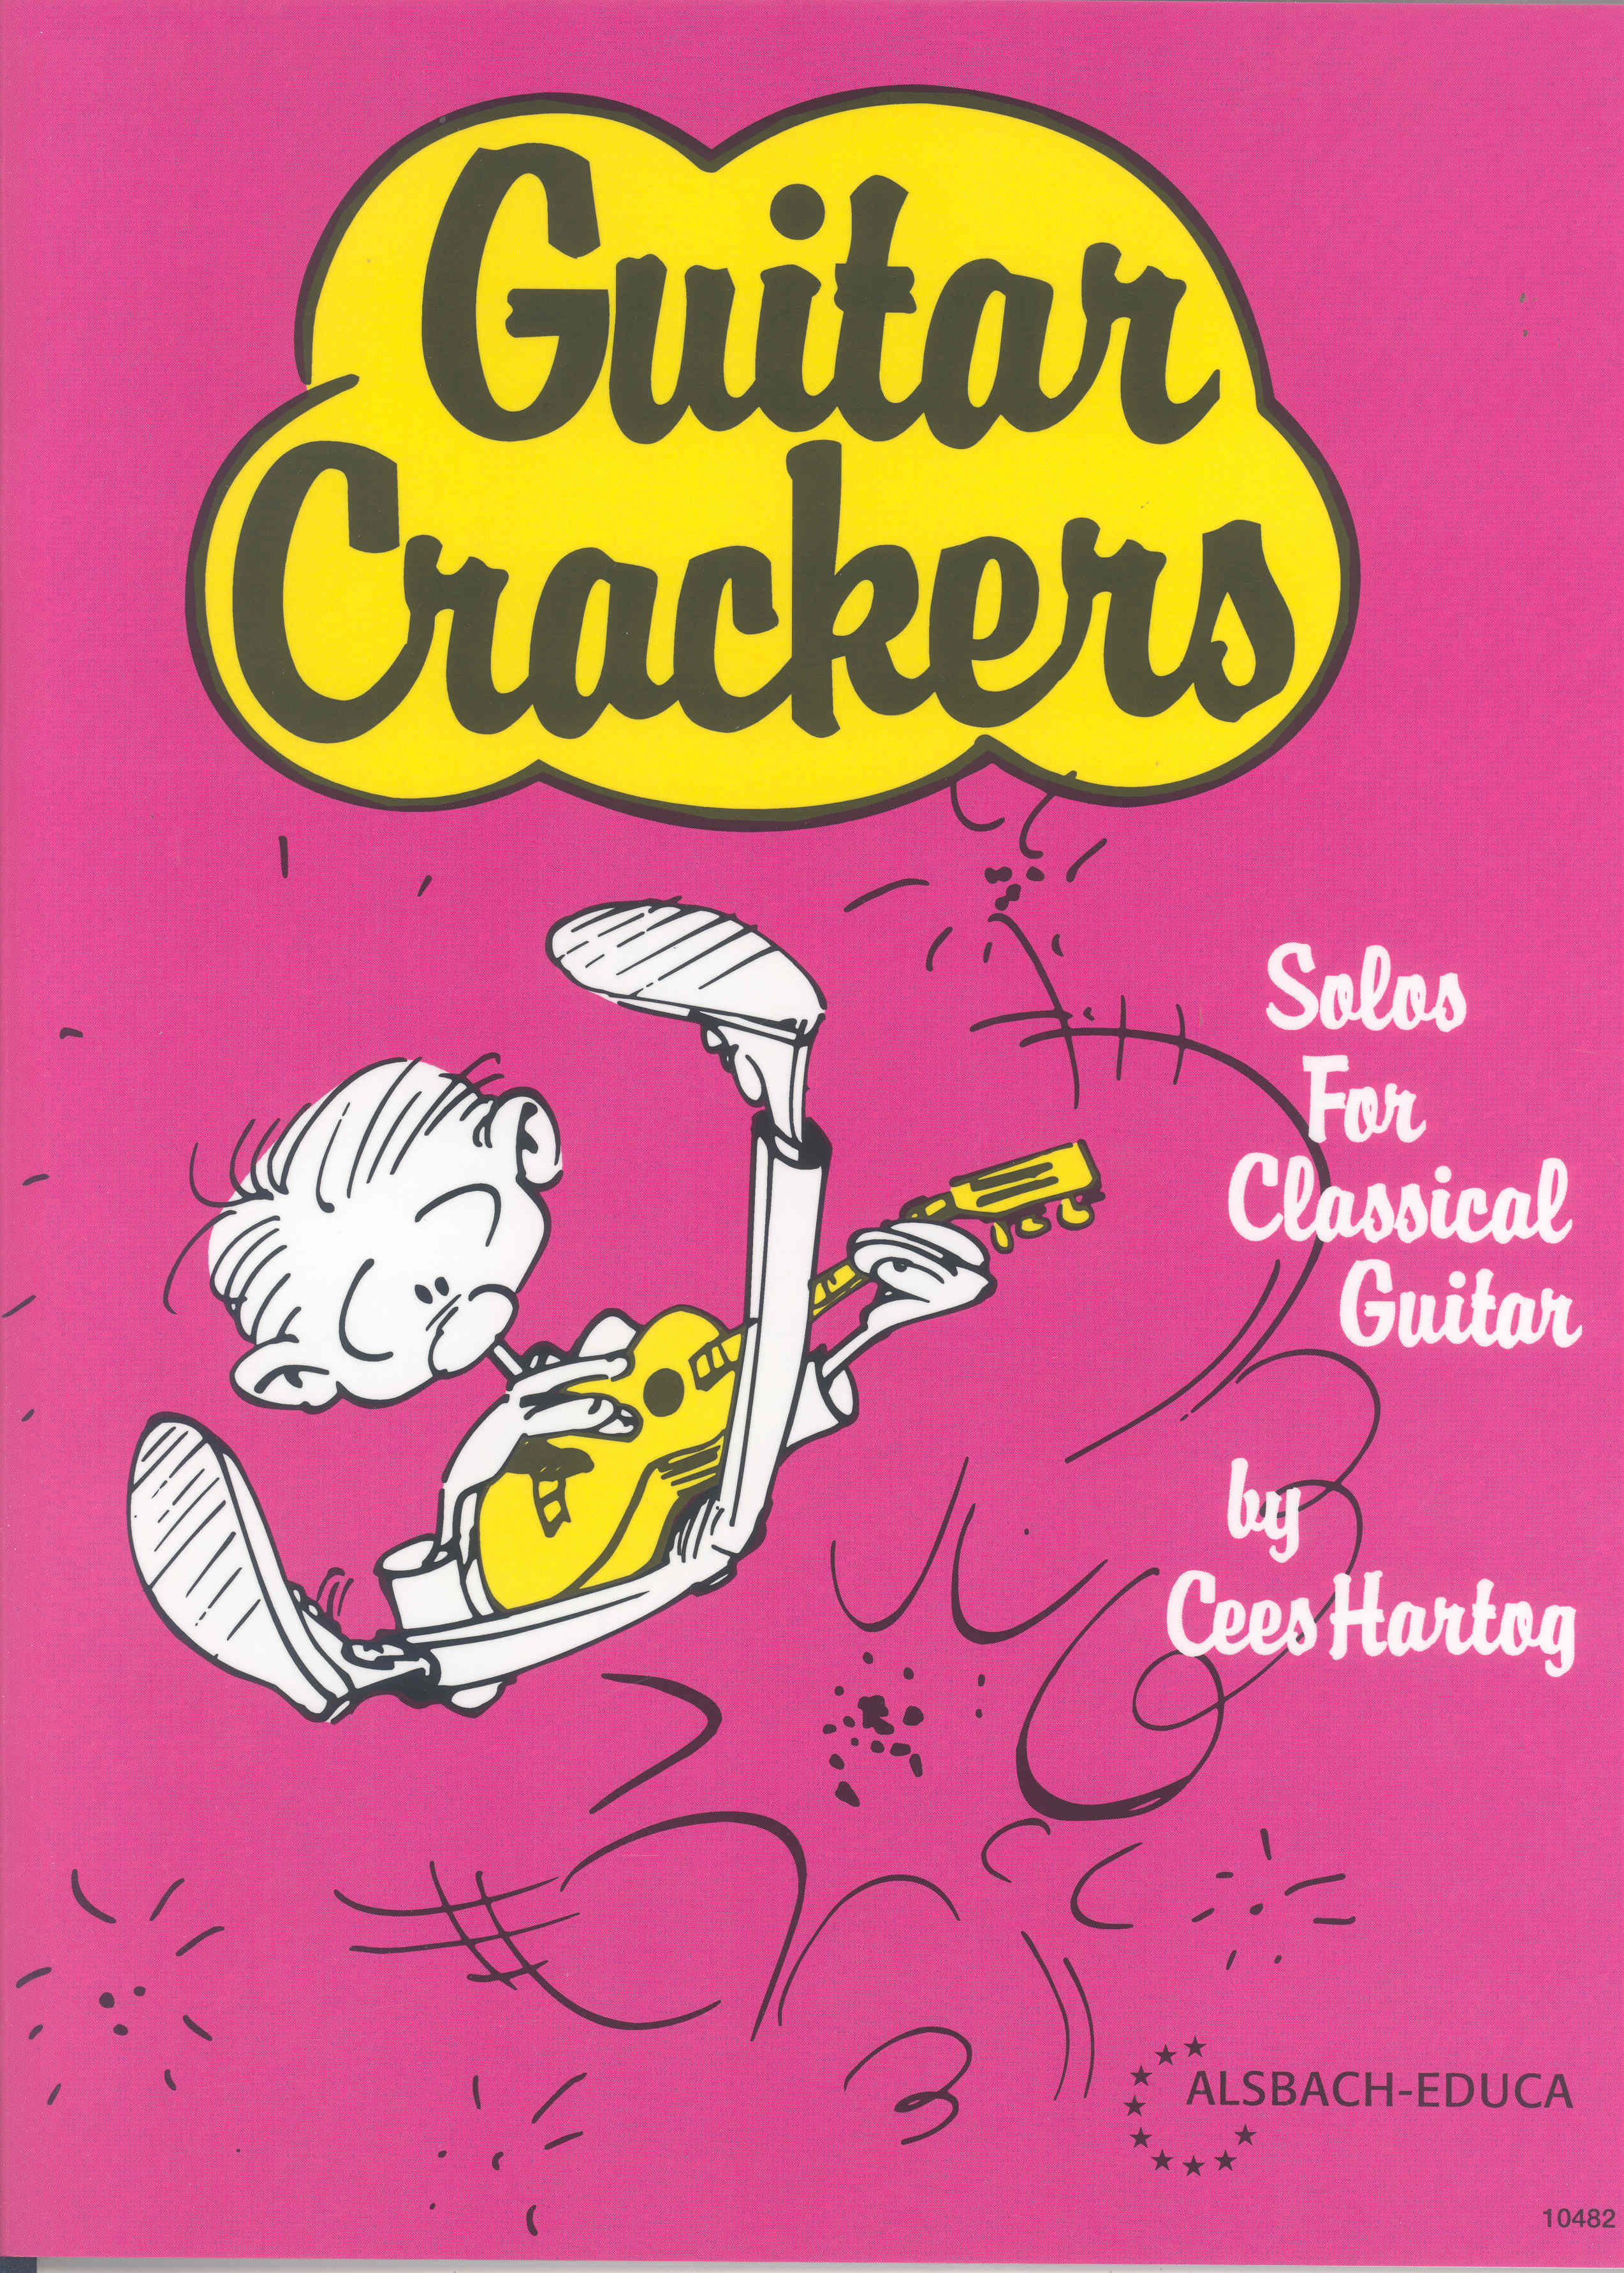 Hartog Guitar Crackers Guitar Sheet Music Songbook